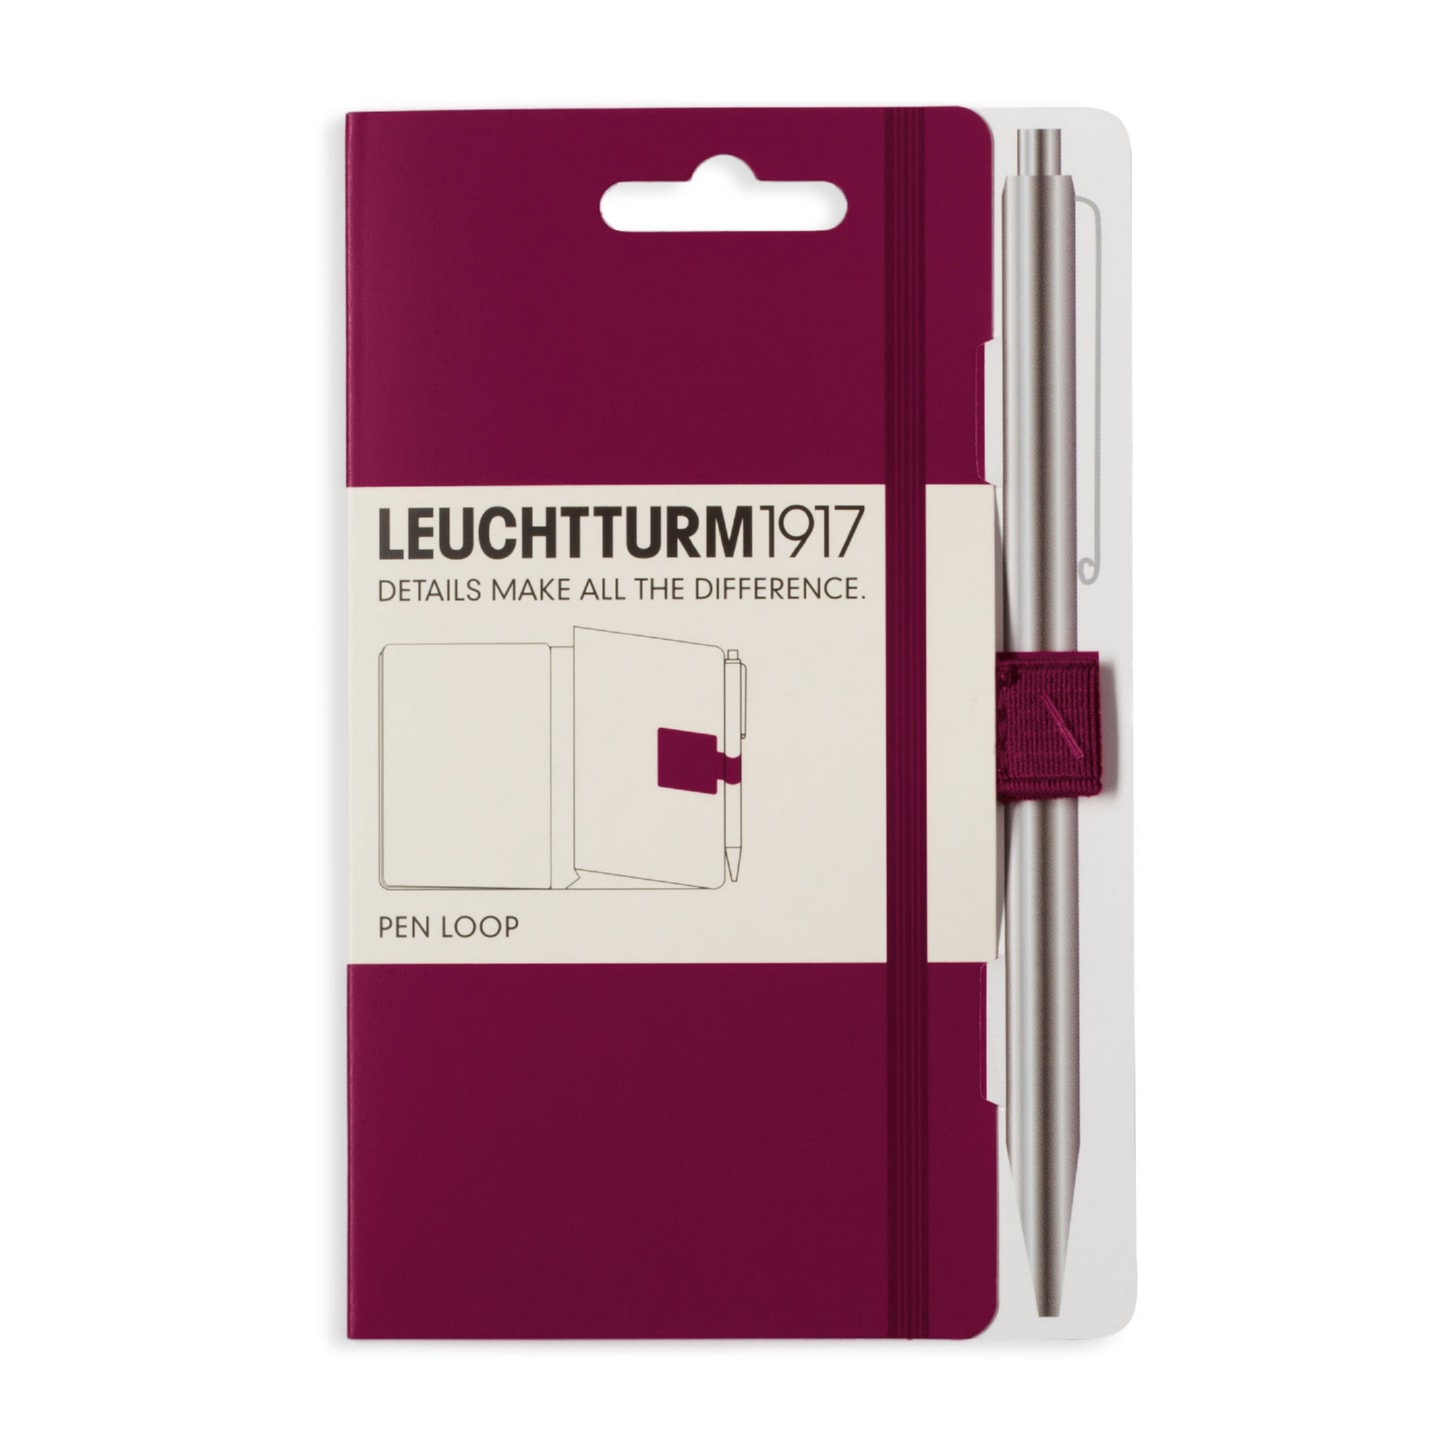 Петля самоклеящаяся Pen Loop для ручек на блокноты Leuchtturm1917 цвет Красный Портвейн